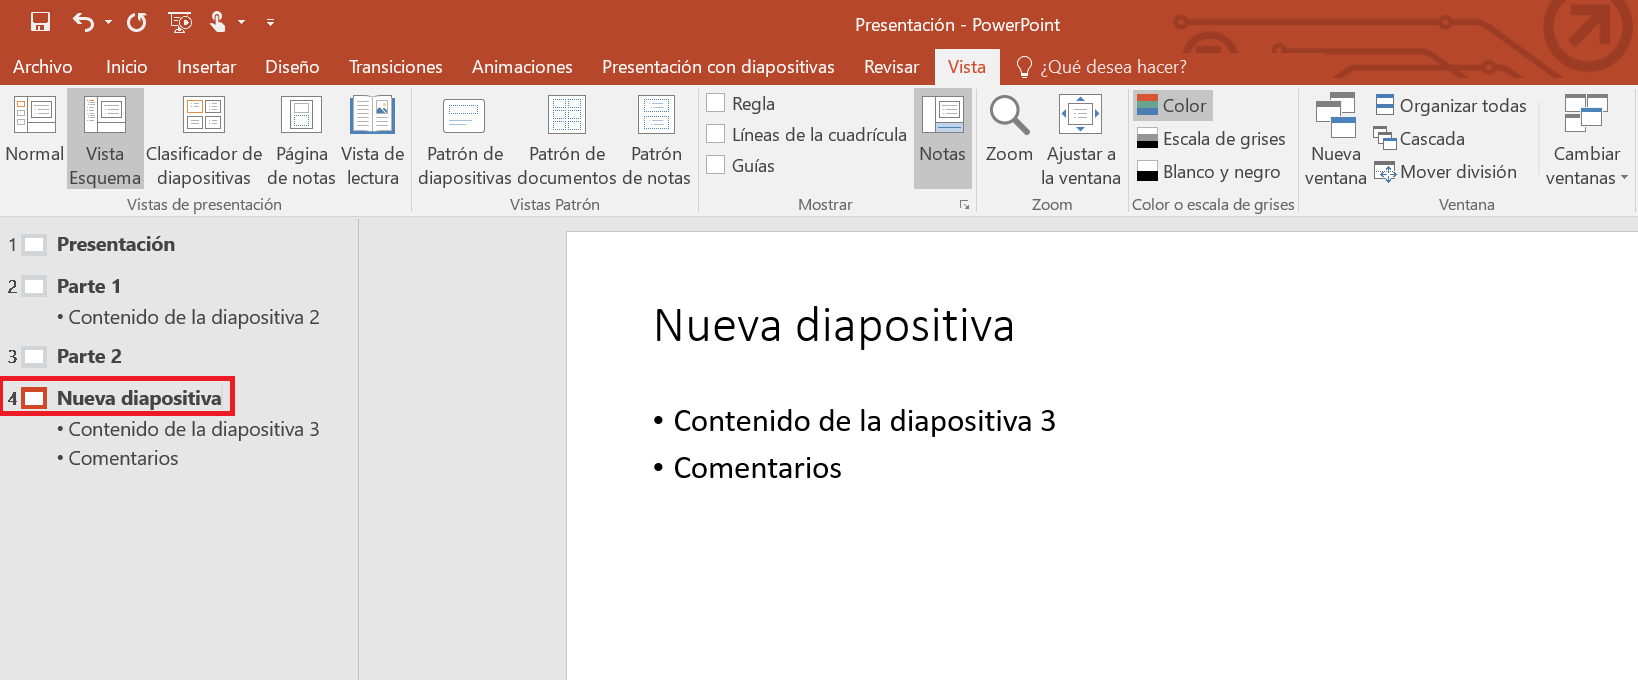 Vista Esquema en PowerPoint: estructura tus presentaciones